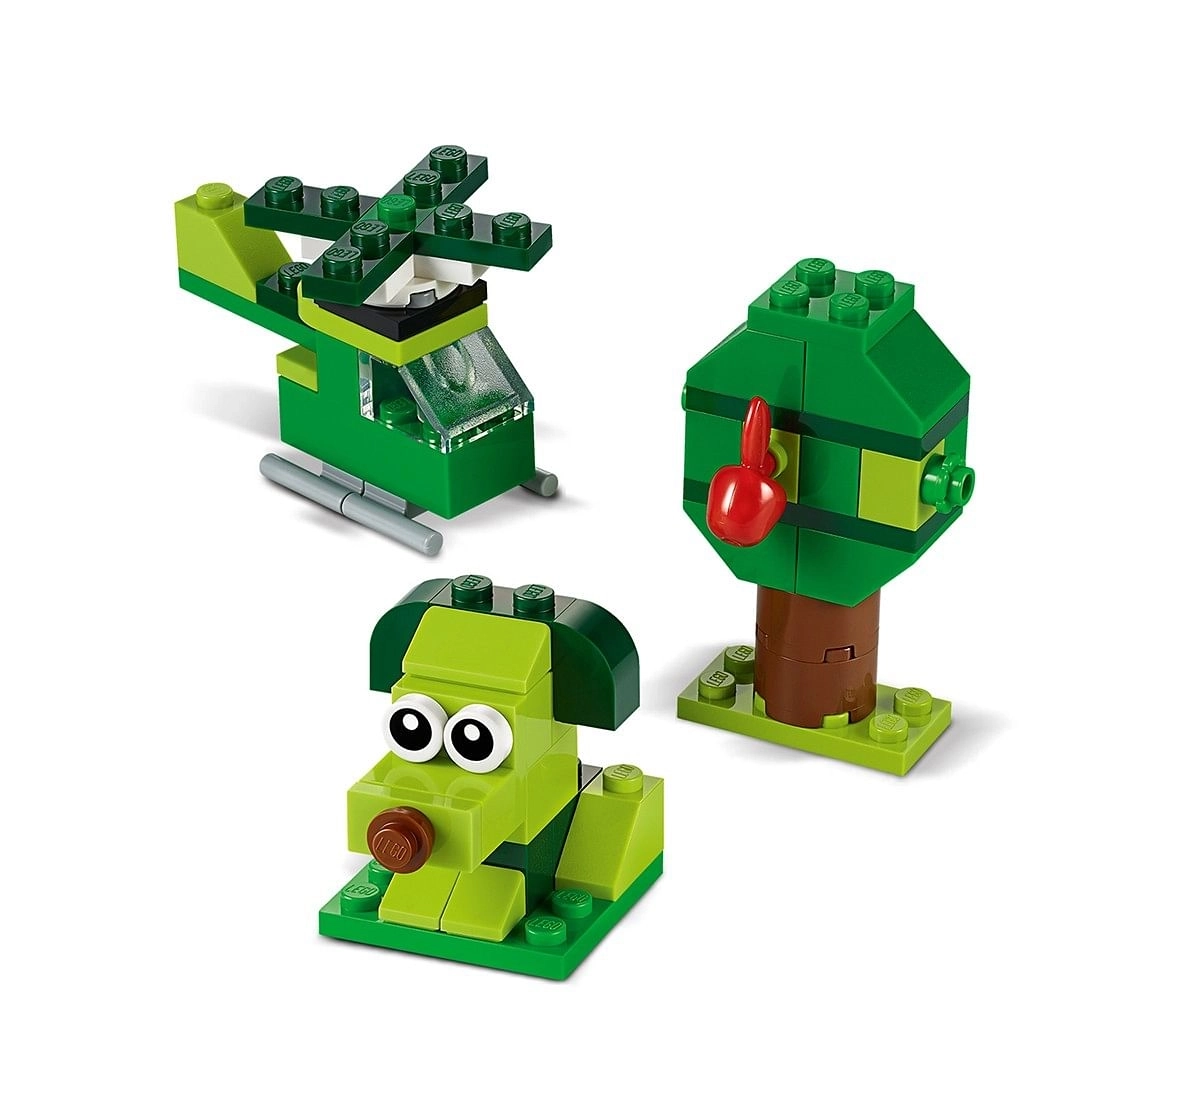 LEGO 11007 Creative Green Bricks Lego Blocks for Kids age 4Y+ 